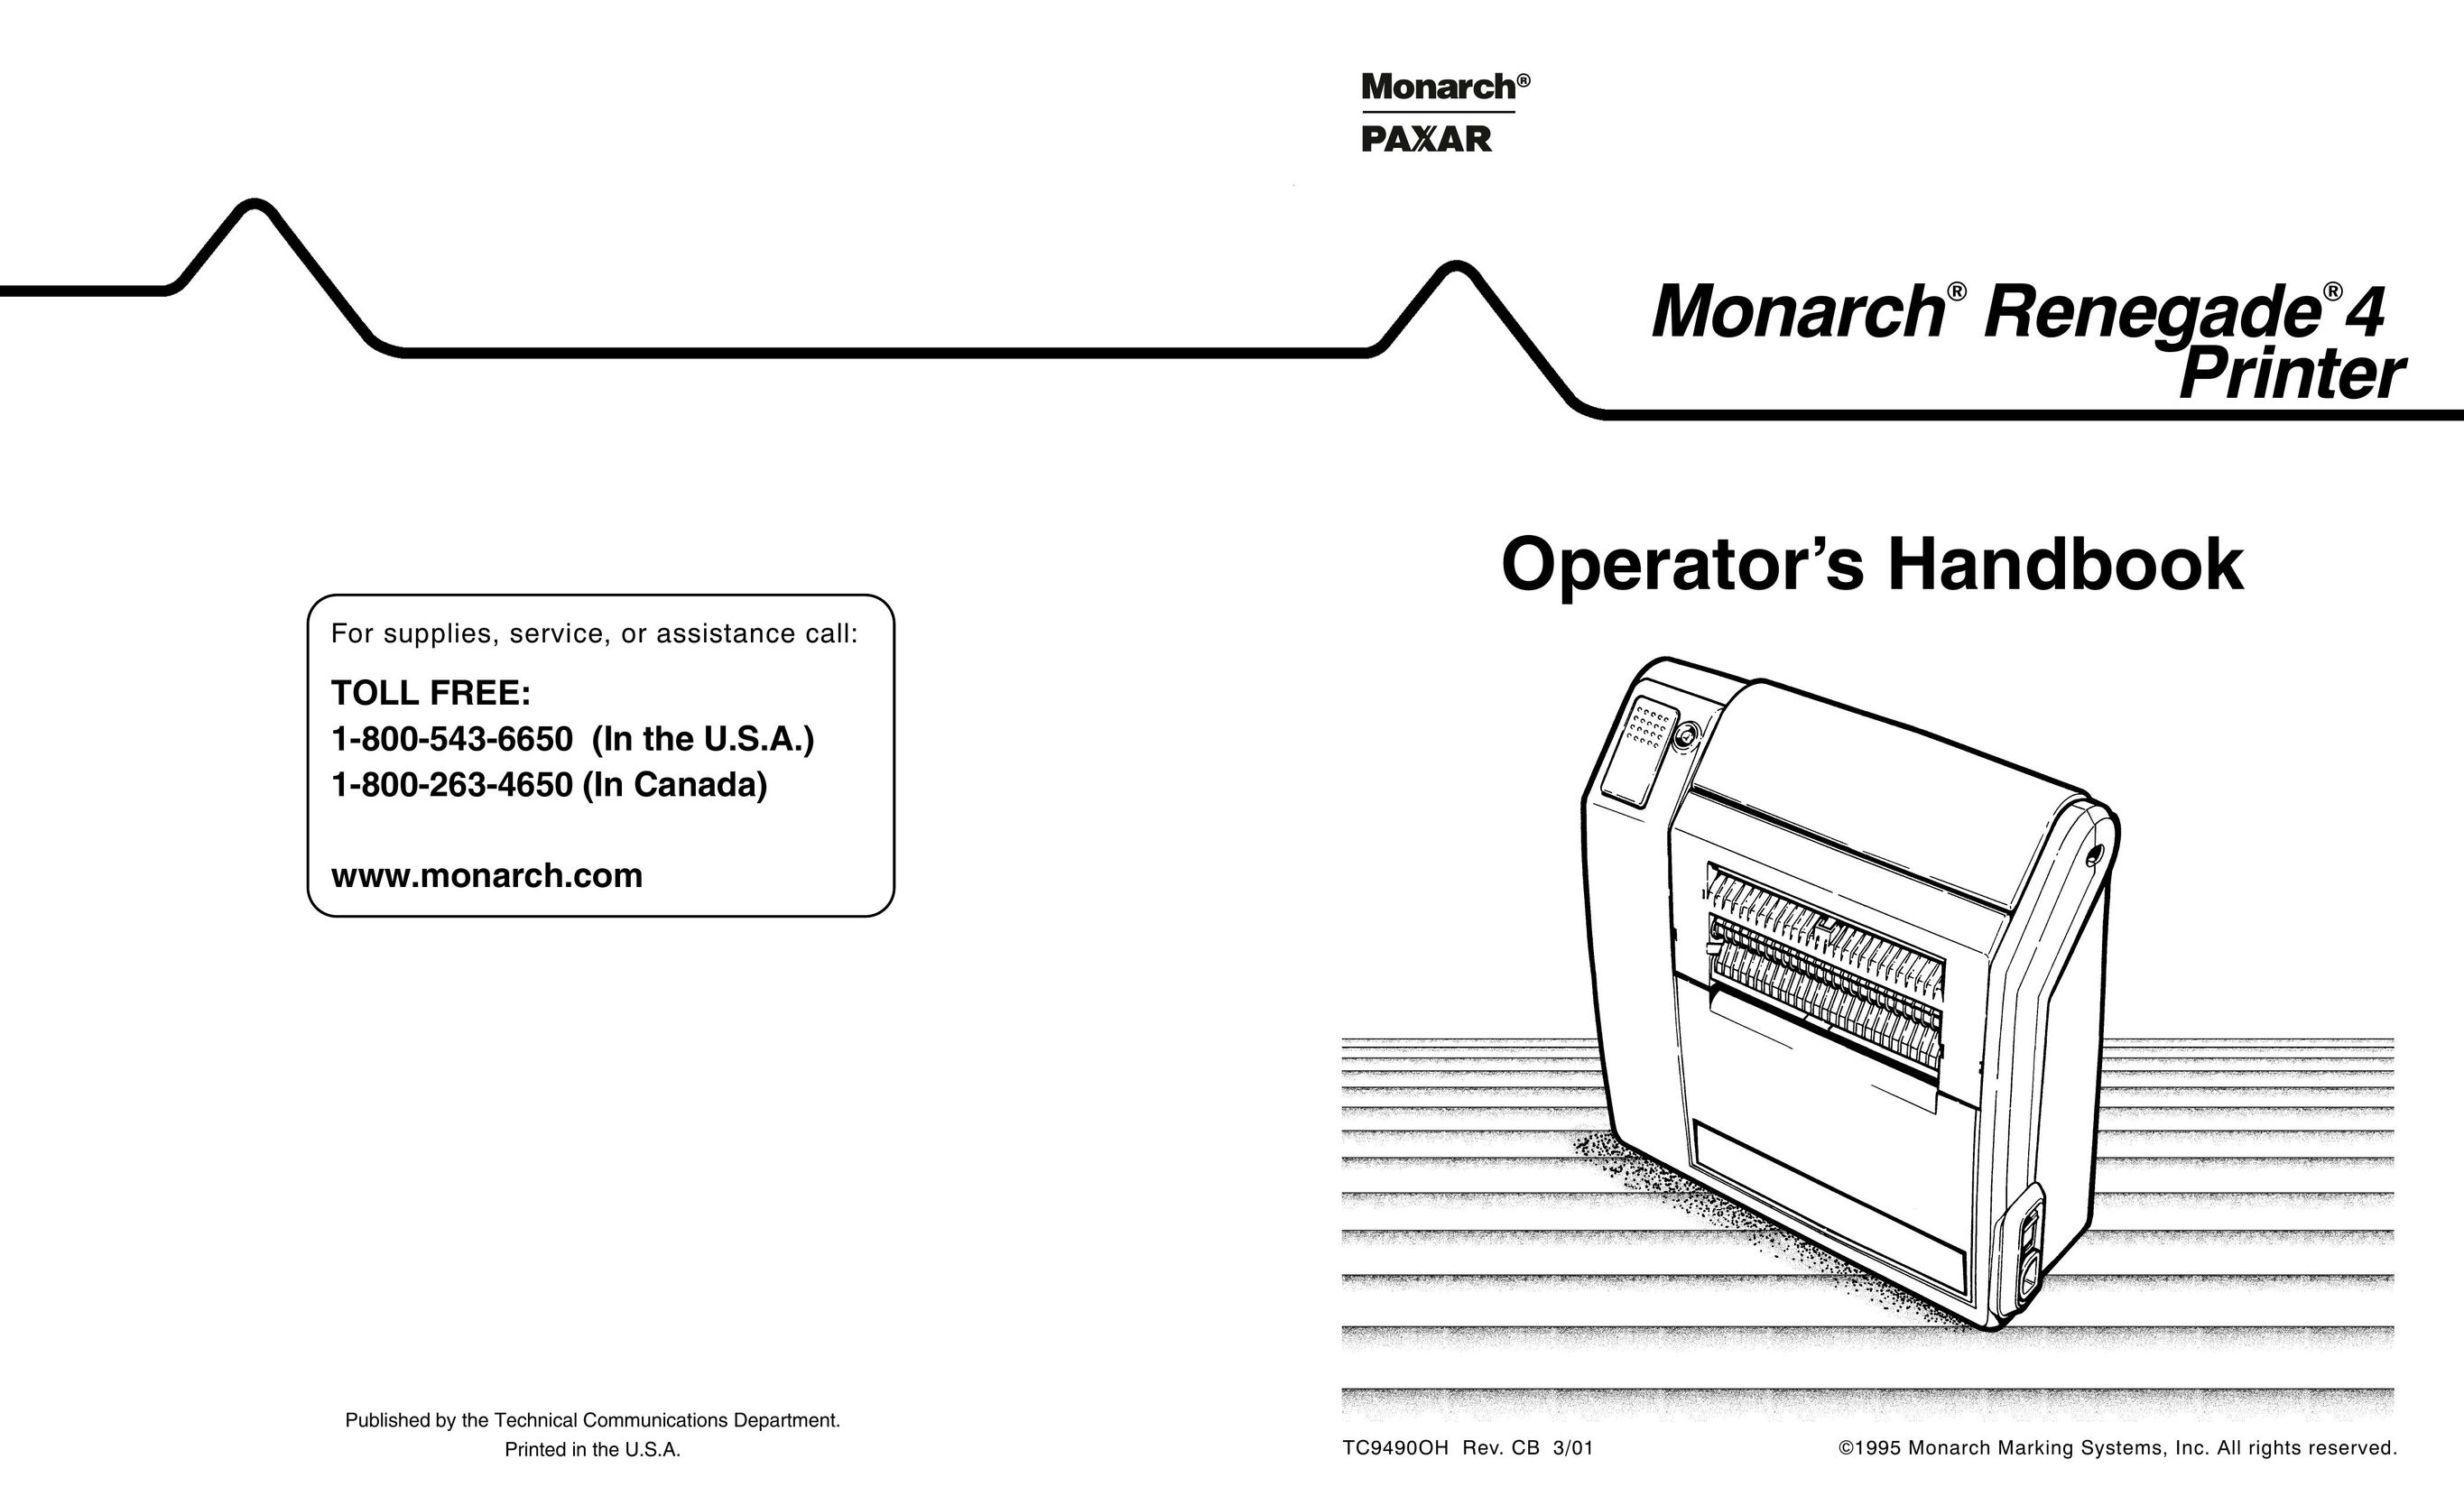 Paxar 4 Printer User Manual